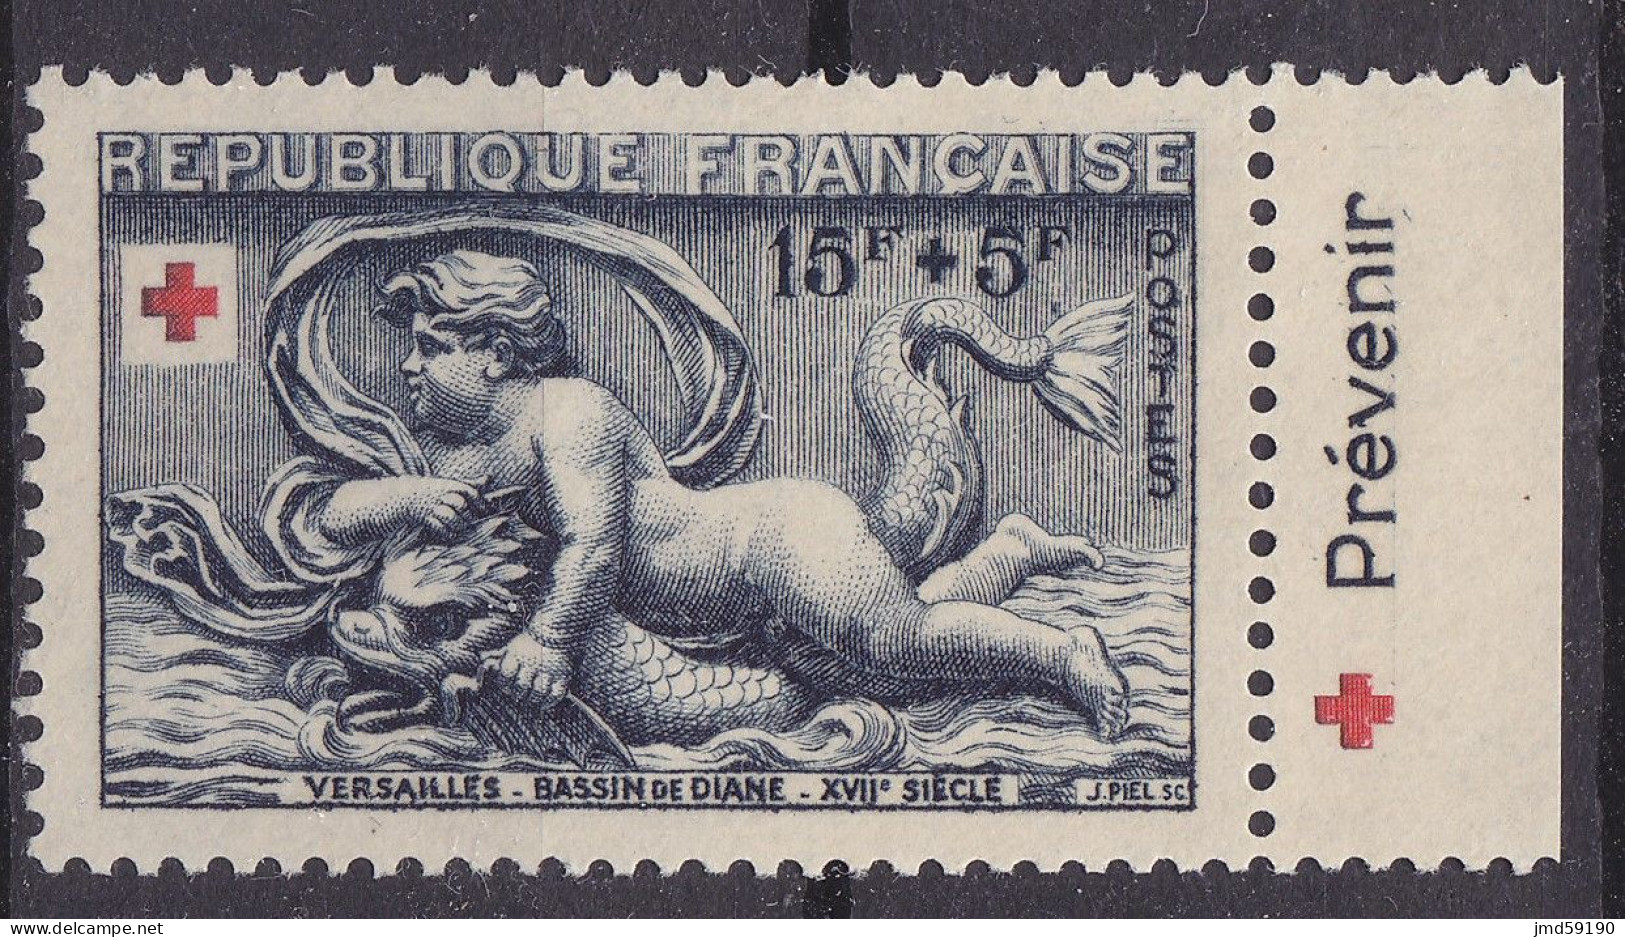 Timbre Neuf* NSG 938a Avec Bandelette Publicitaire PREVENIR, Issu Du Carnet Croix Rouge De 1952 - Ungebraucht